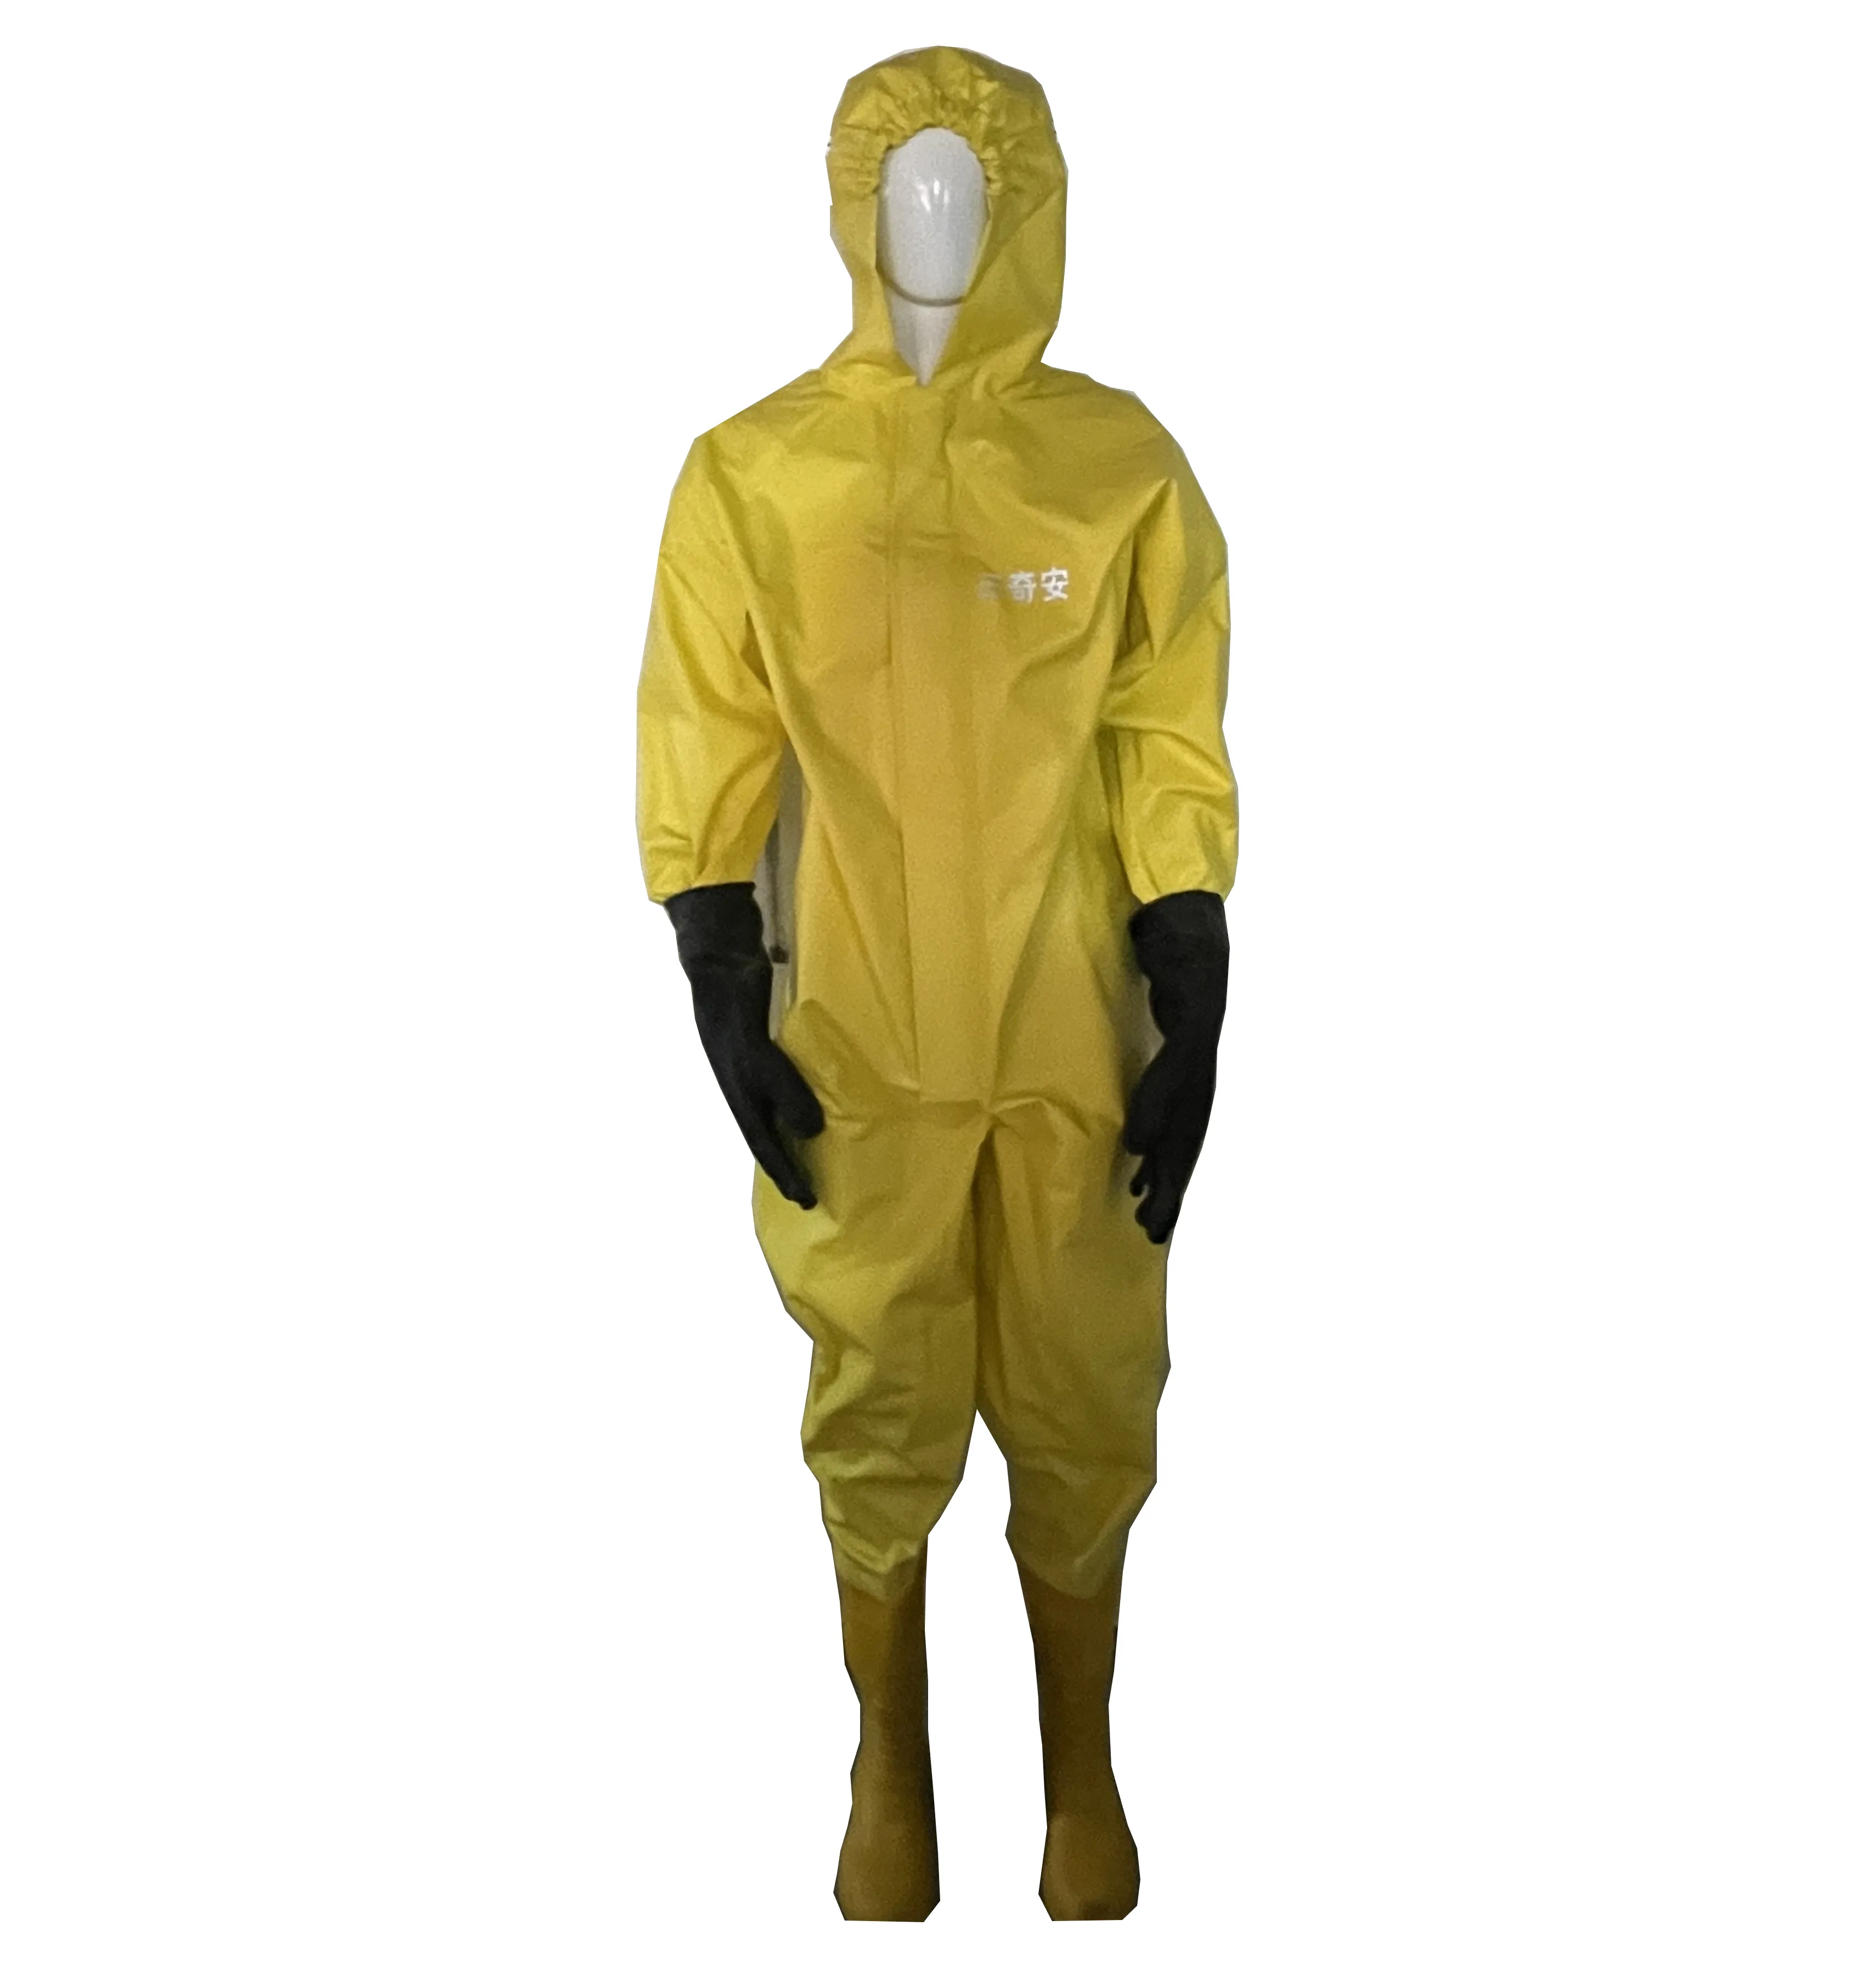 ブチルゴム素材化学保護体安全ハズマットカバールケミカルプロテクティブスーツ